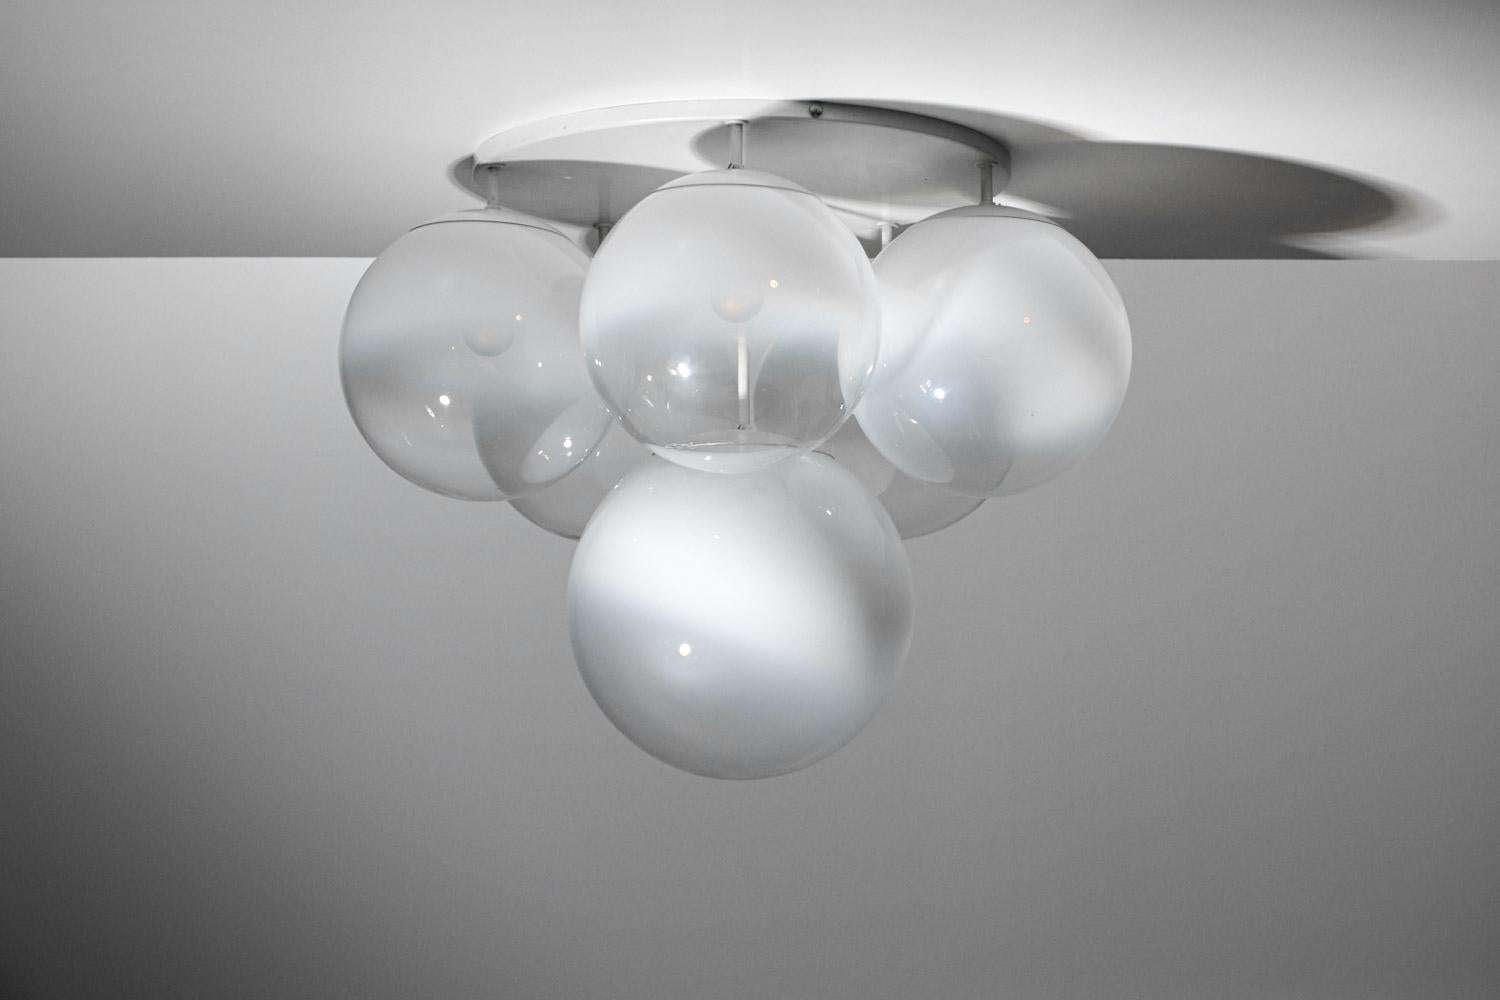 Pair of 70's Italian ceiling lights in Murano glass Gino Sarfatti style - G723 - 2